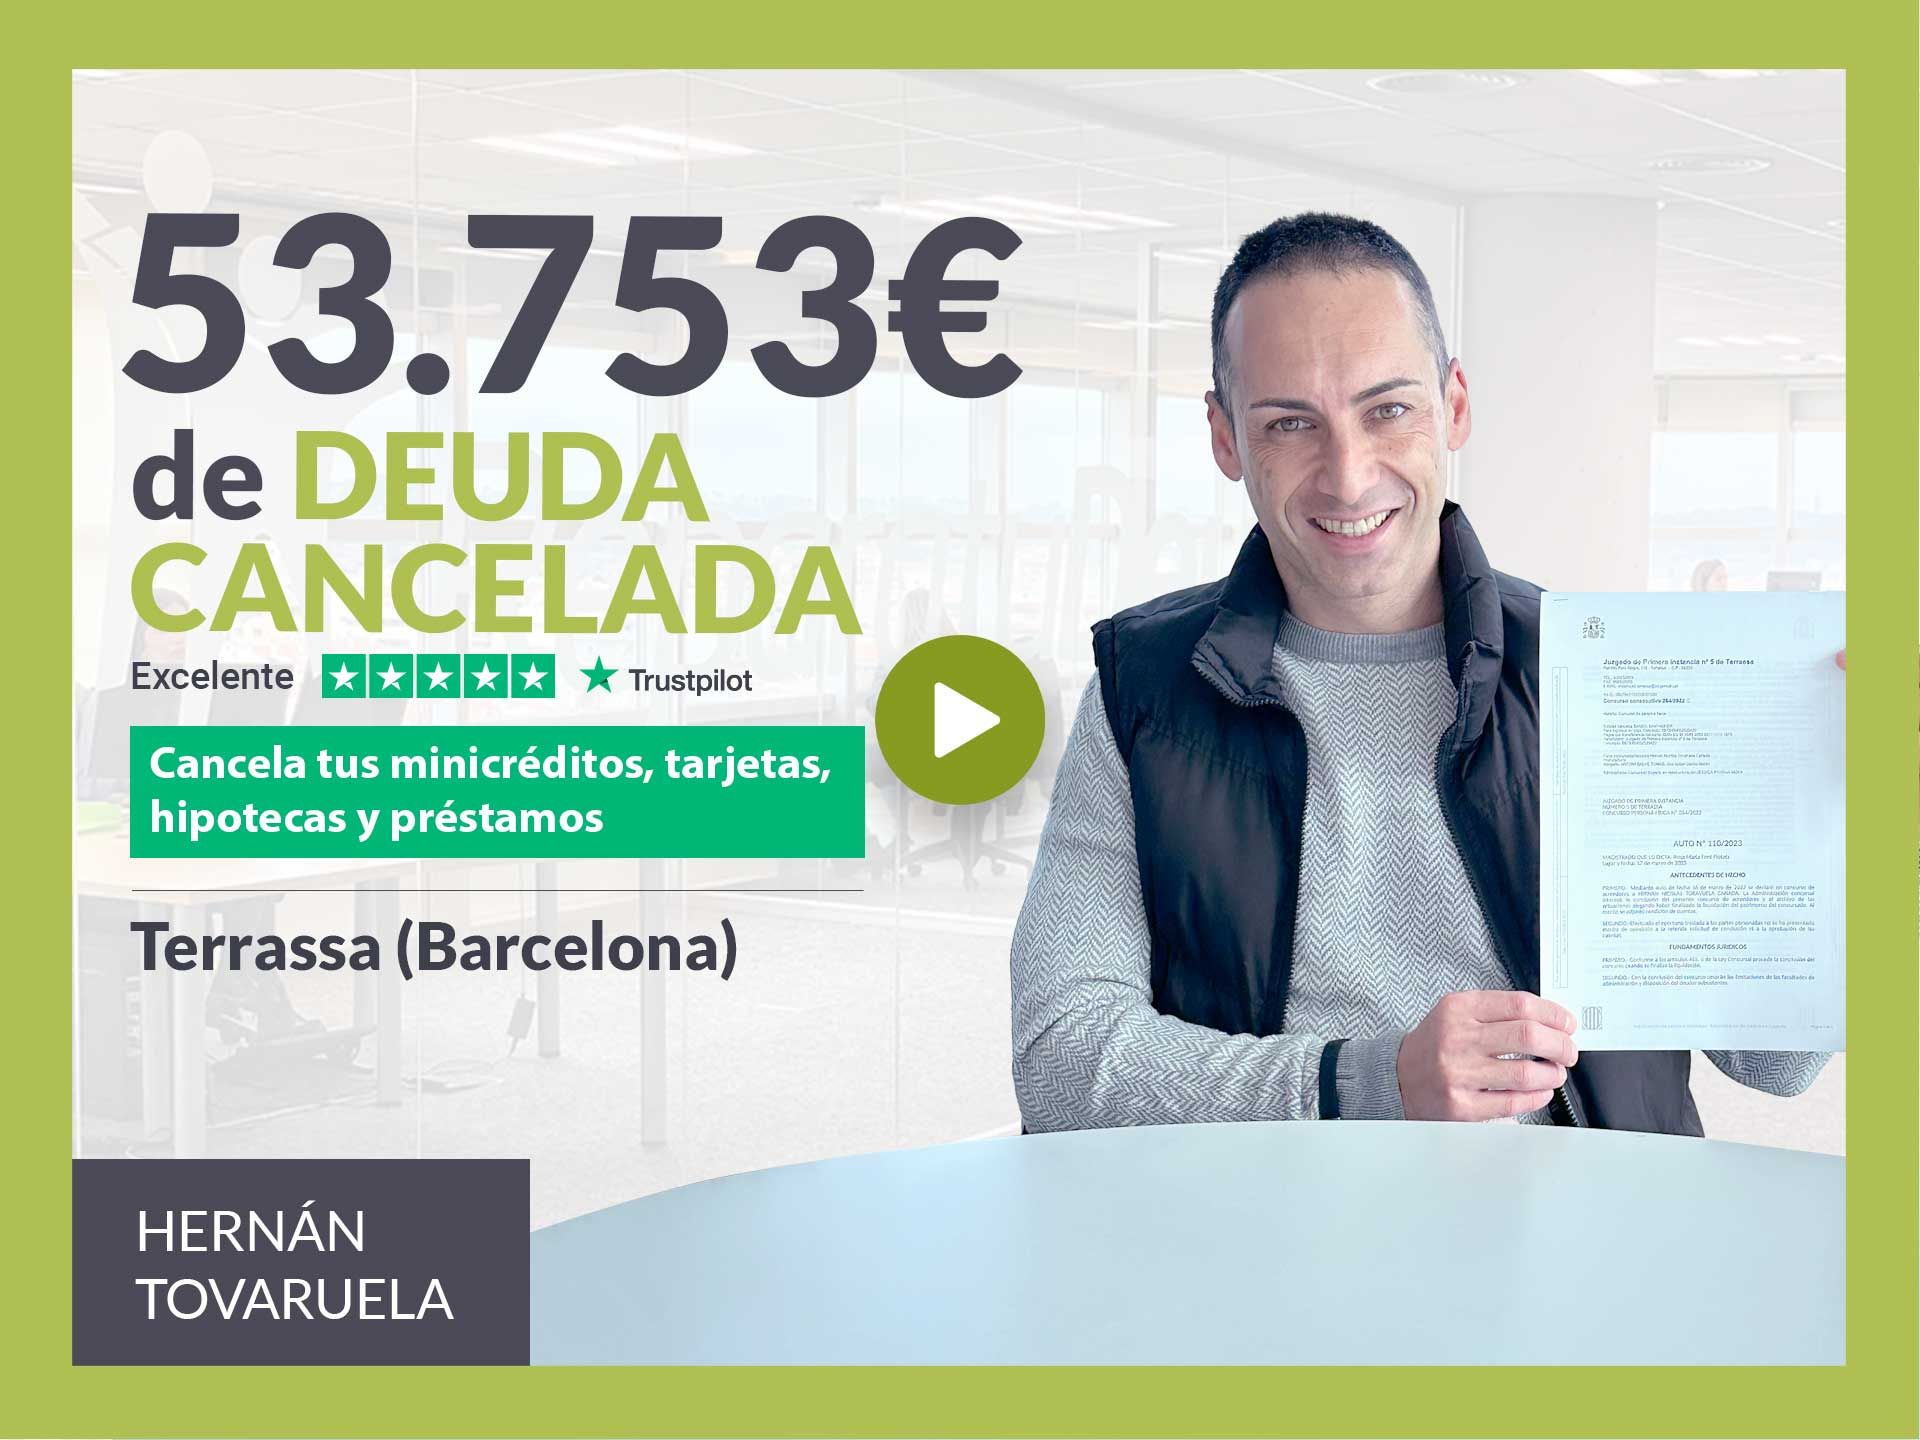 Repara tu Deuda Abogados cancela 53.753? en Terrassa (Barcelona) con la Ley de Segunda Oportunidad